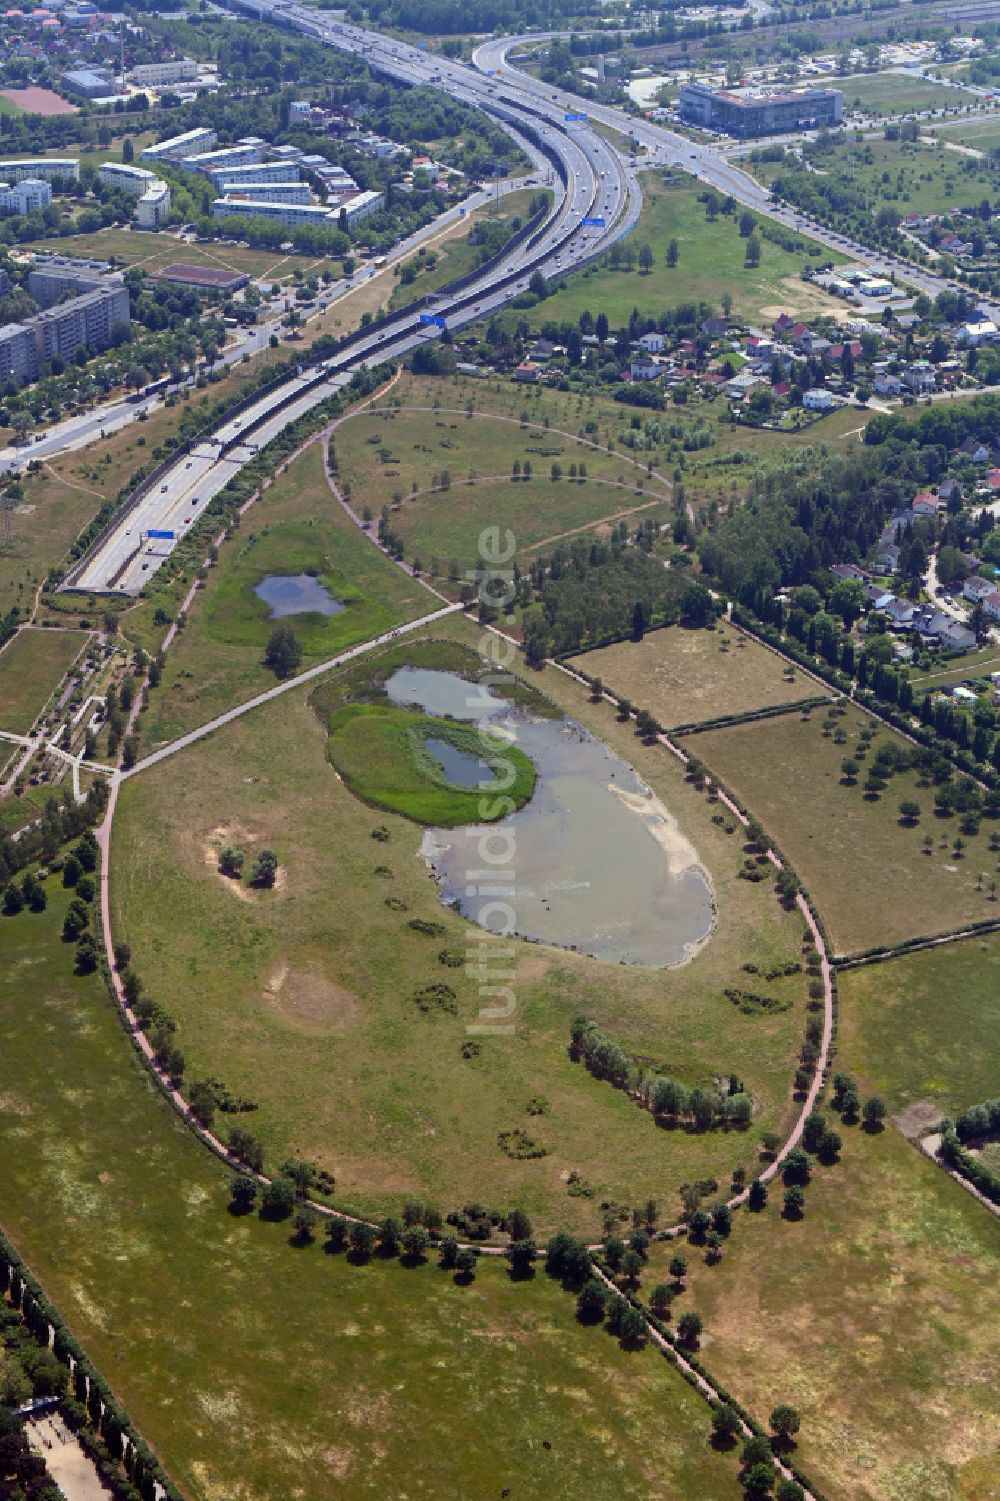 Luftbild Berlin - Grasflächen- Strukturen einer Feld- Landschaft Landschaftspark Rudow-Altglienicke in Berlin, Deutschland